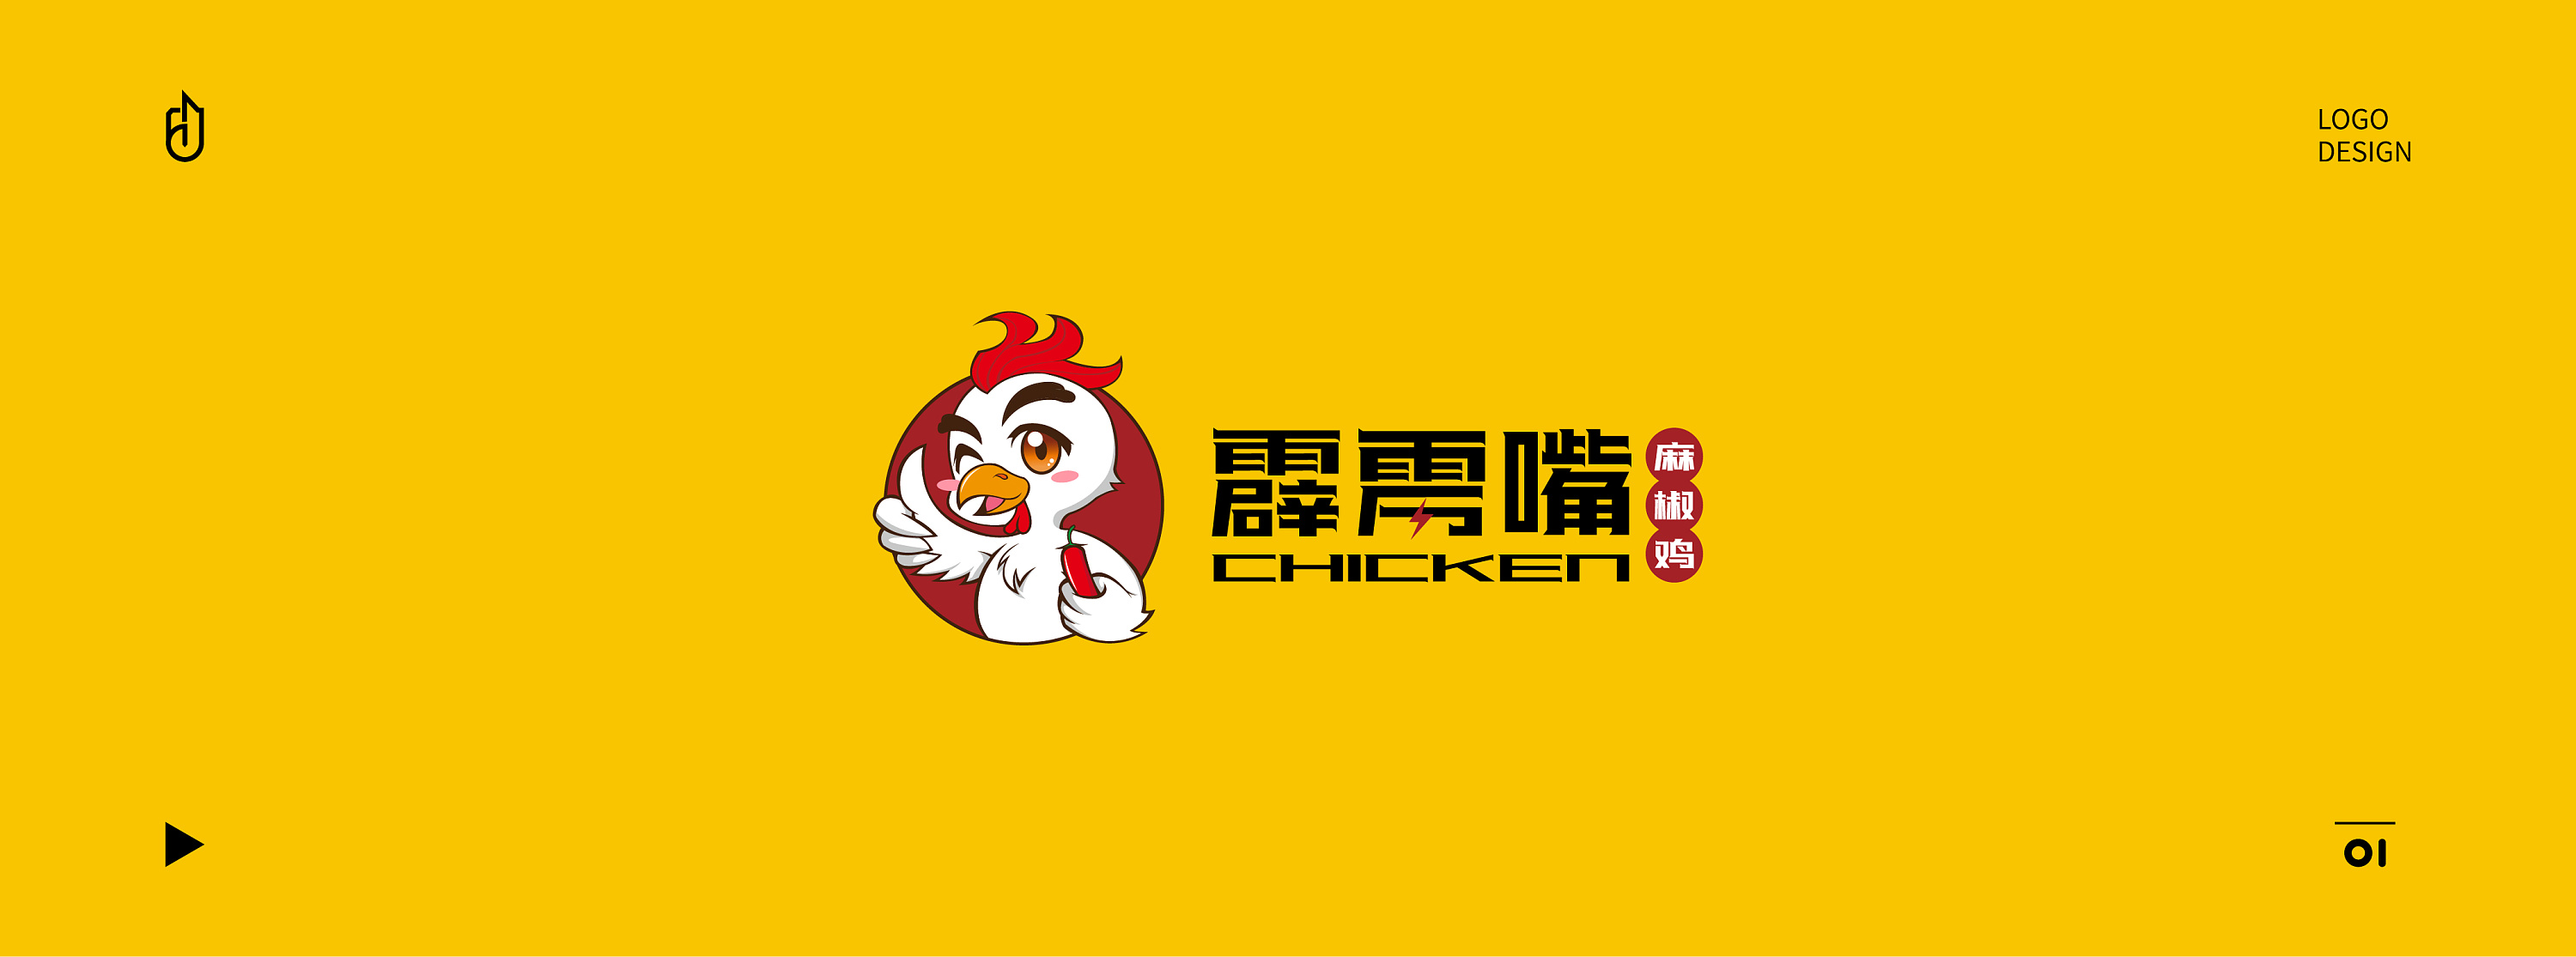 霹雳嘴麻椒鸡卡通logo设计